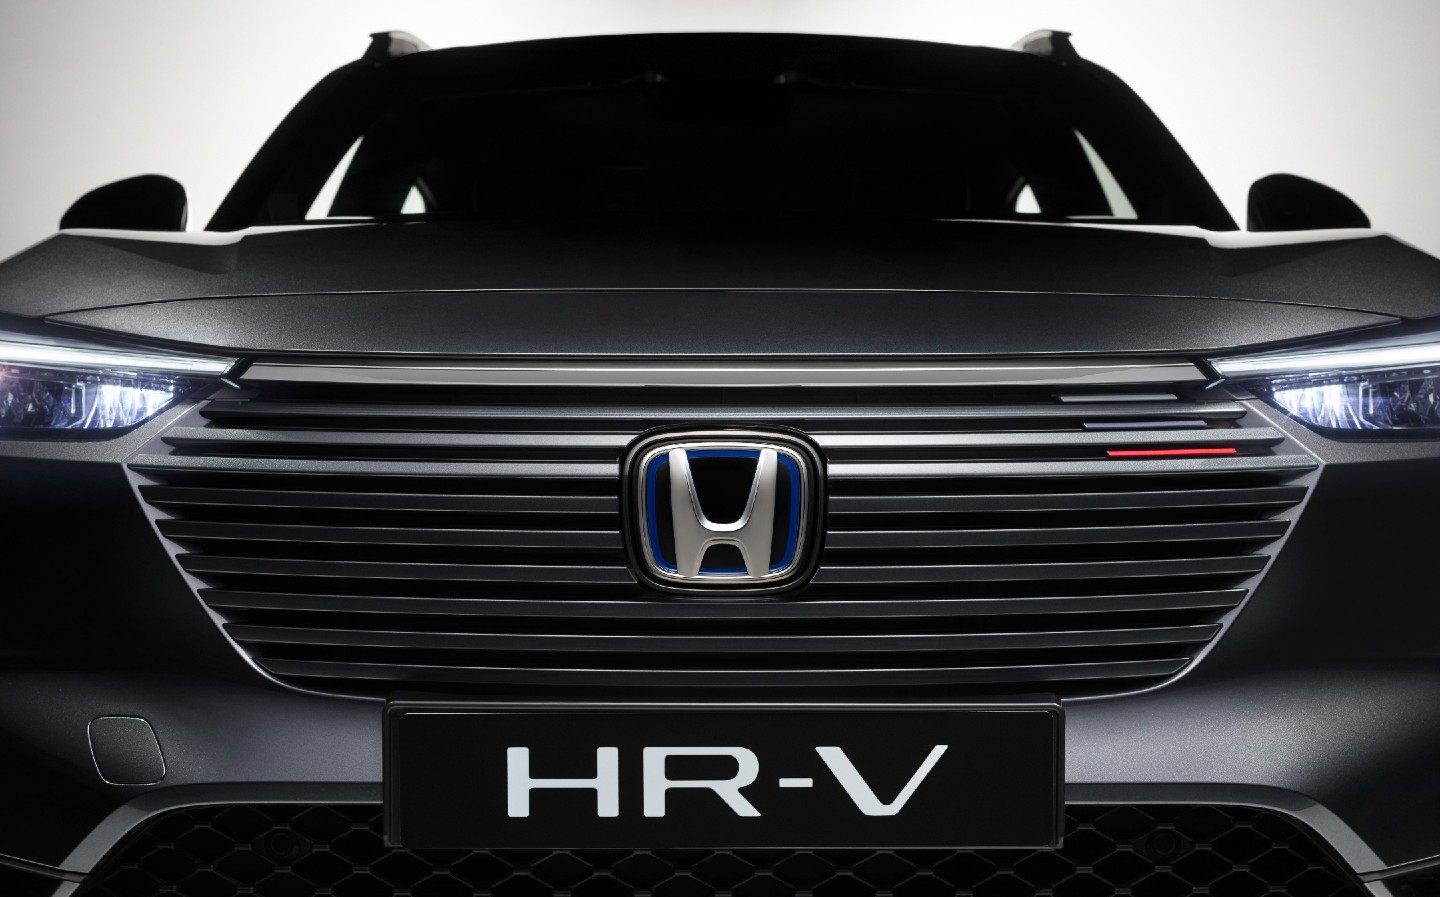 All-new 2021 Honda HR-V revealed